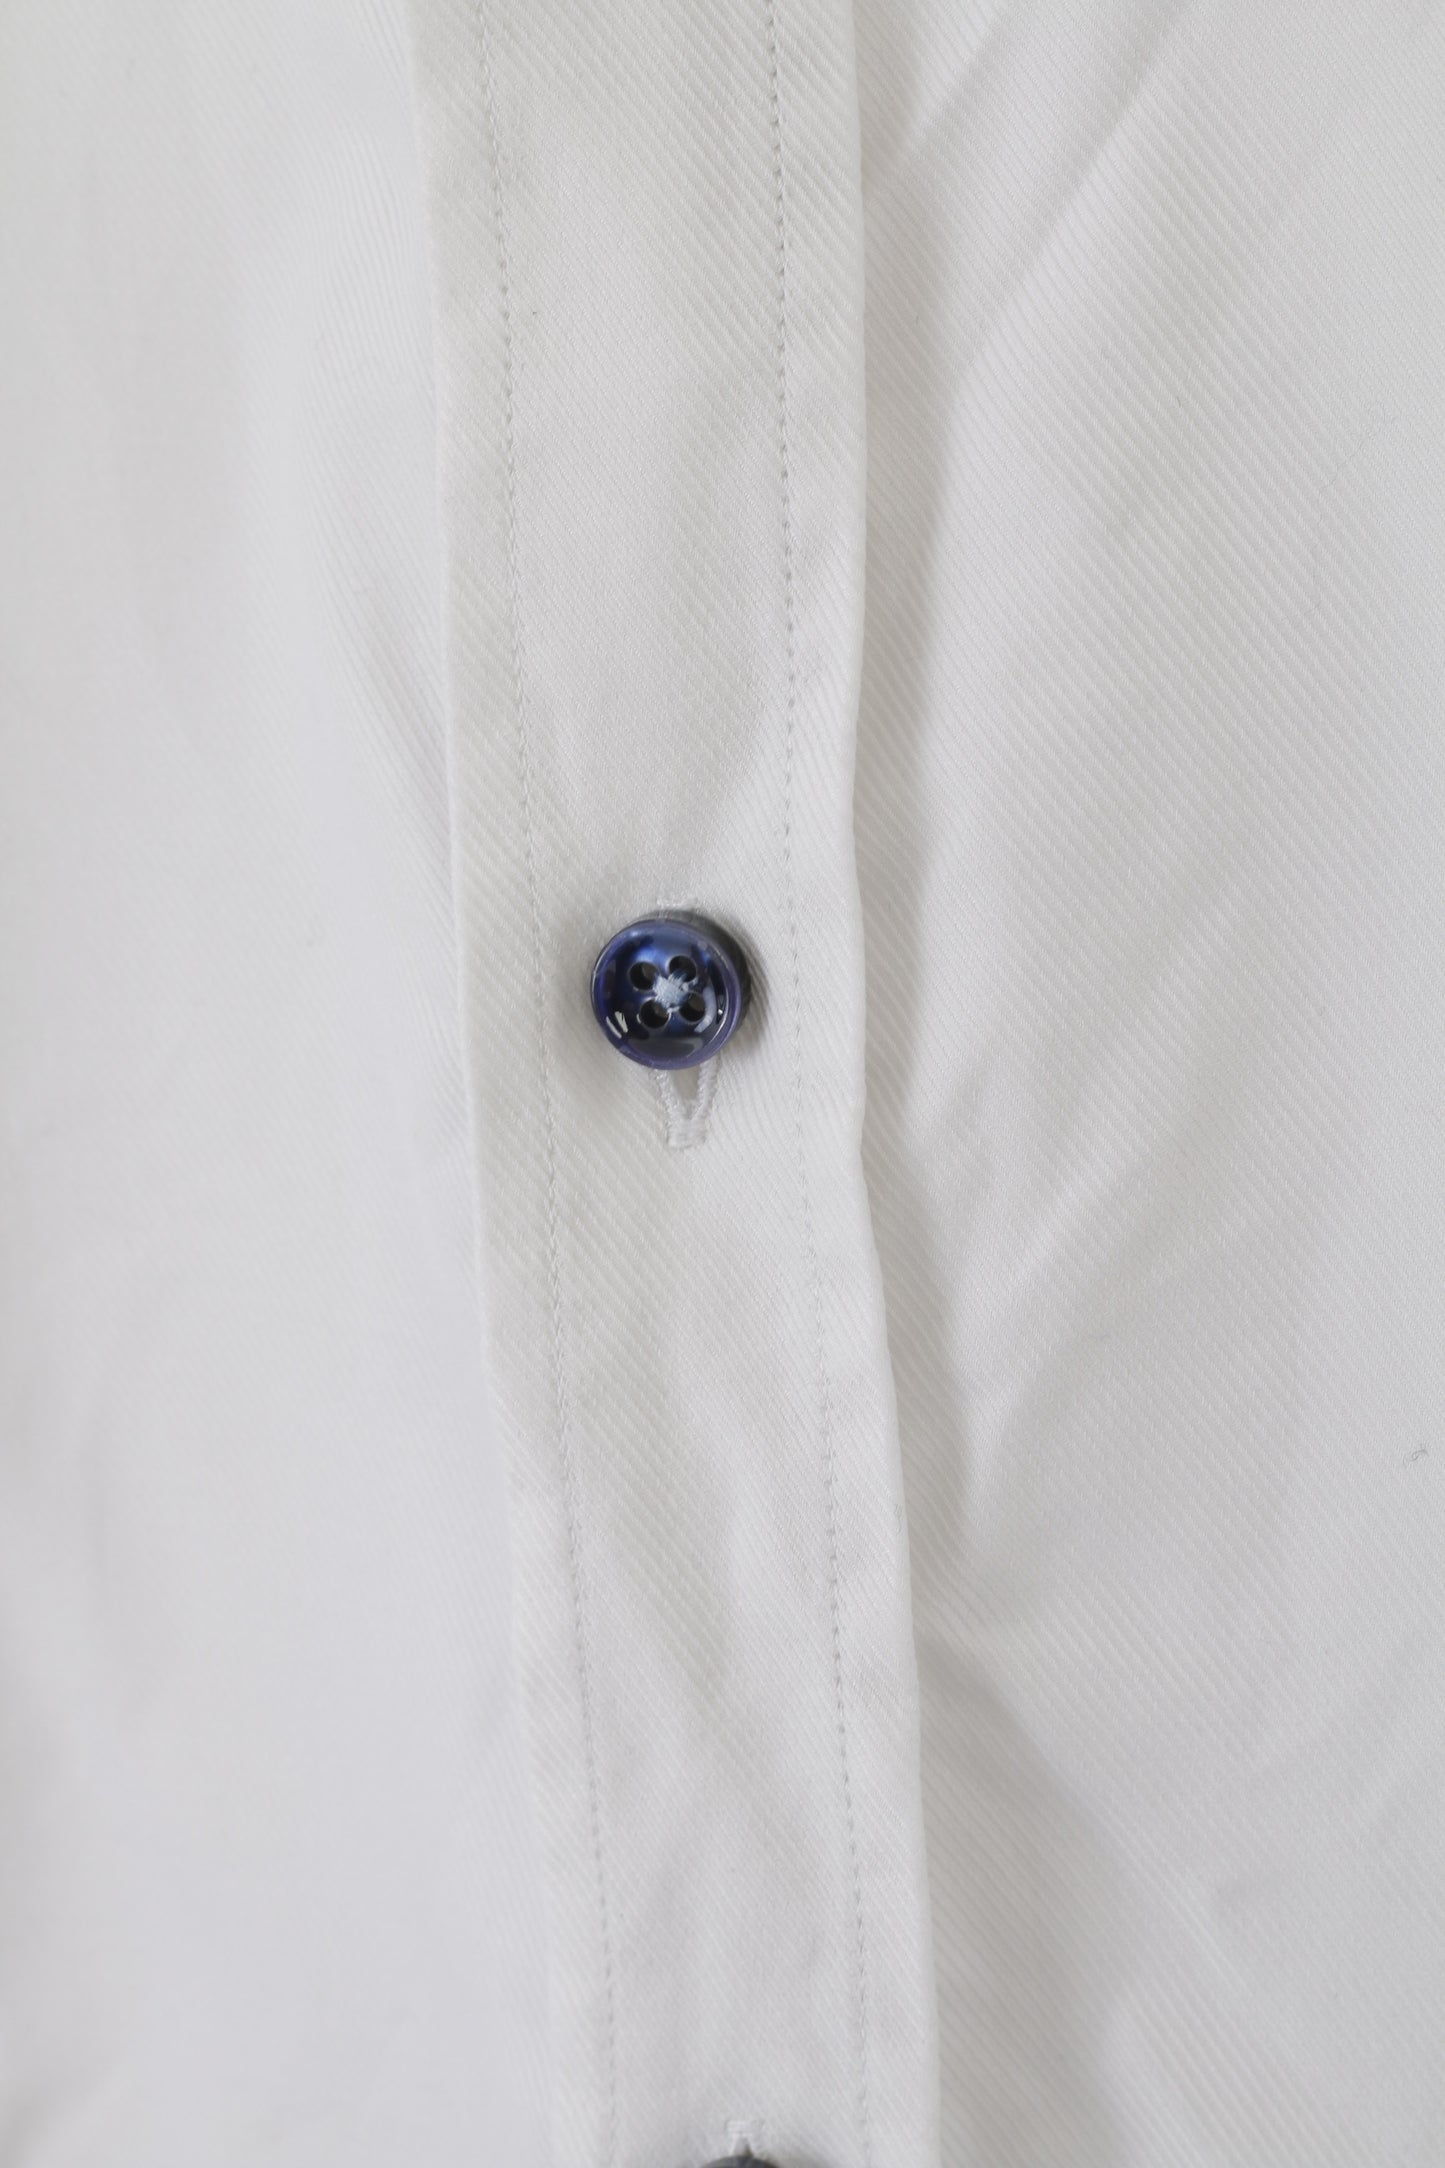 Stenstroms Men 40 15 3/4 L Casual Shirt White Cotton FitSweden Plain Long Sleeve Top